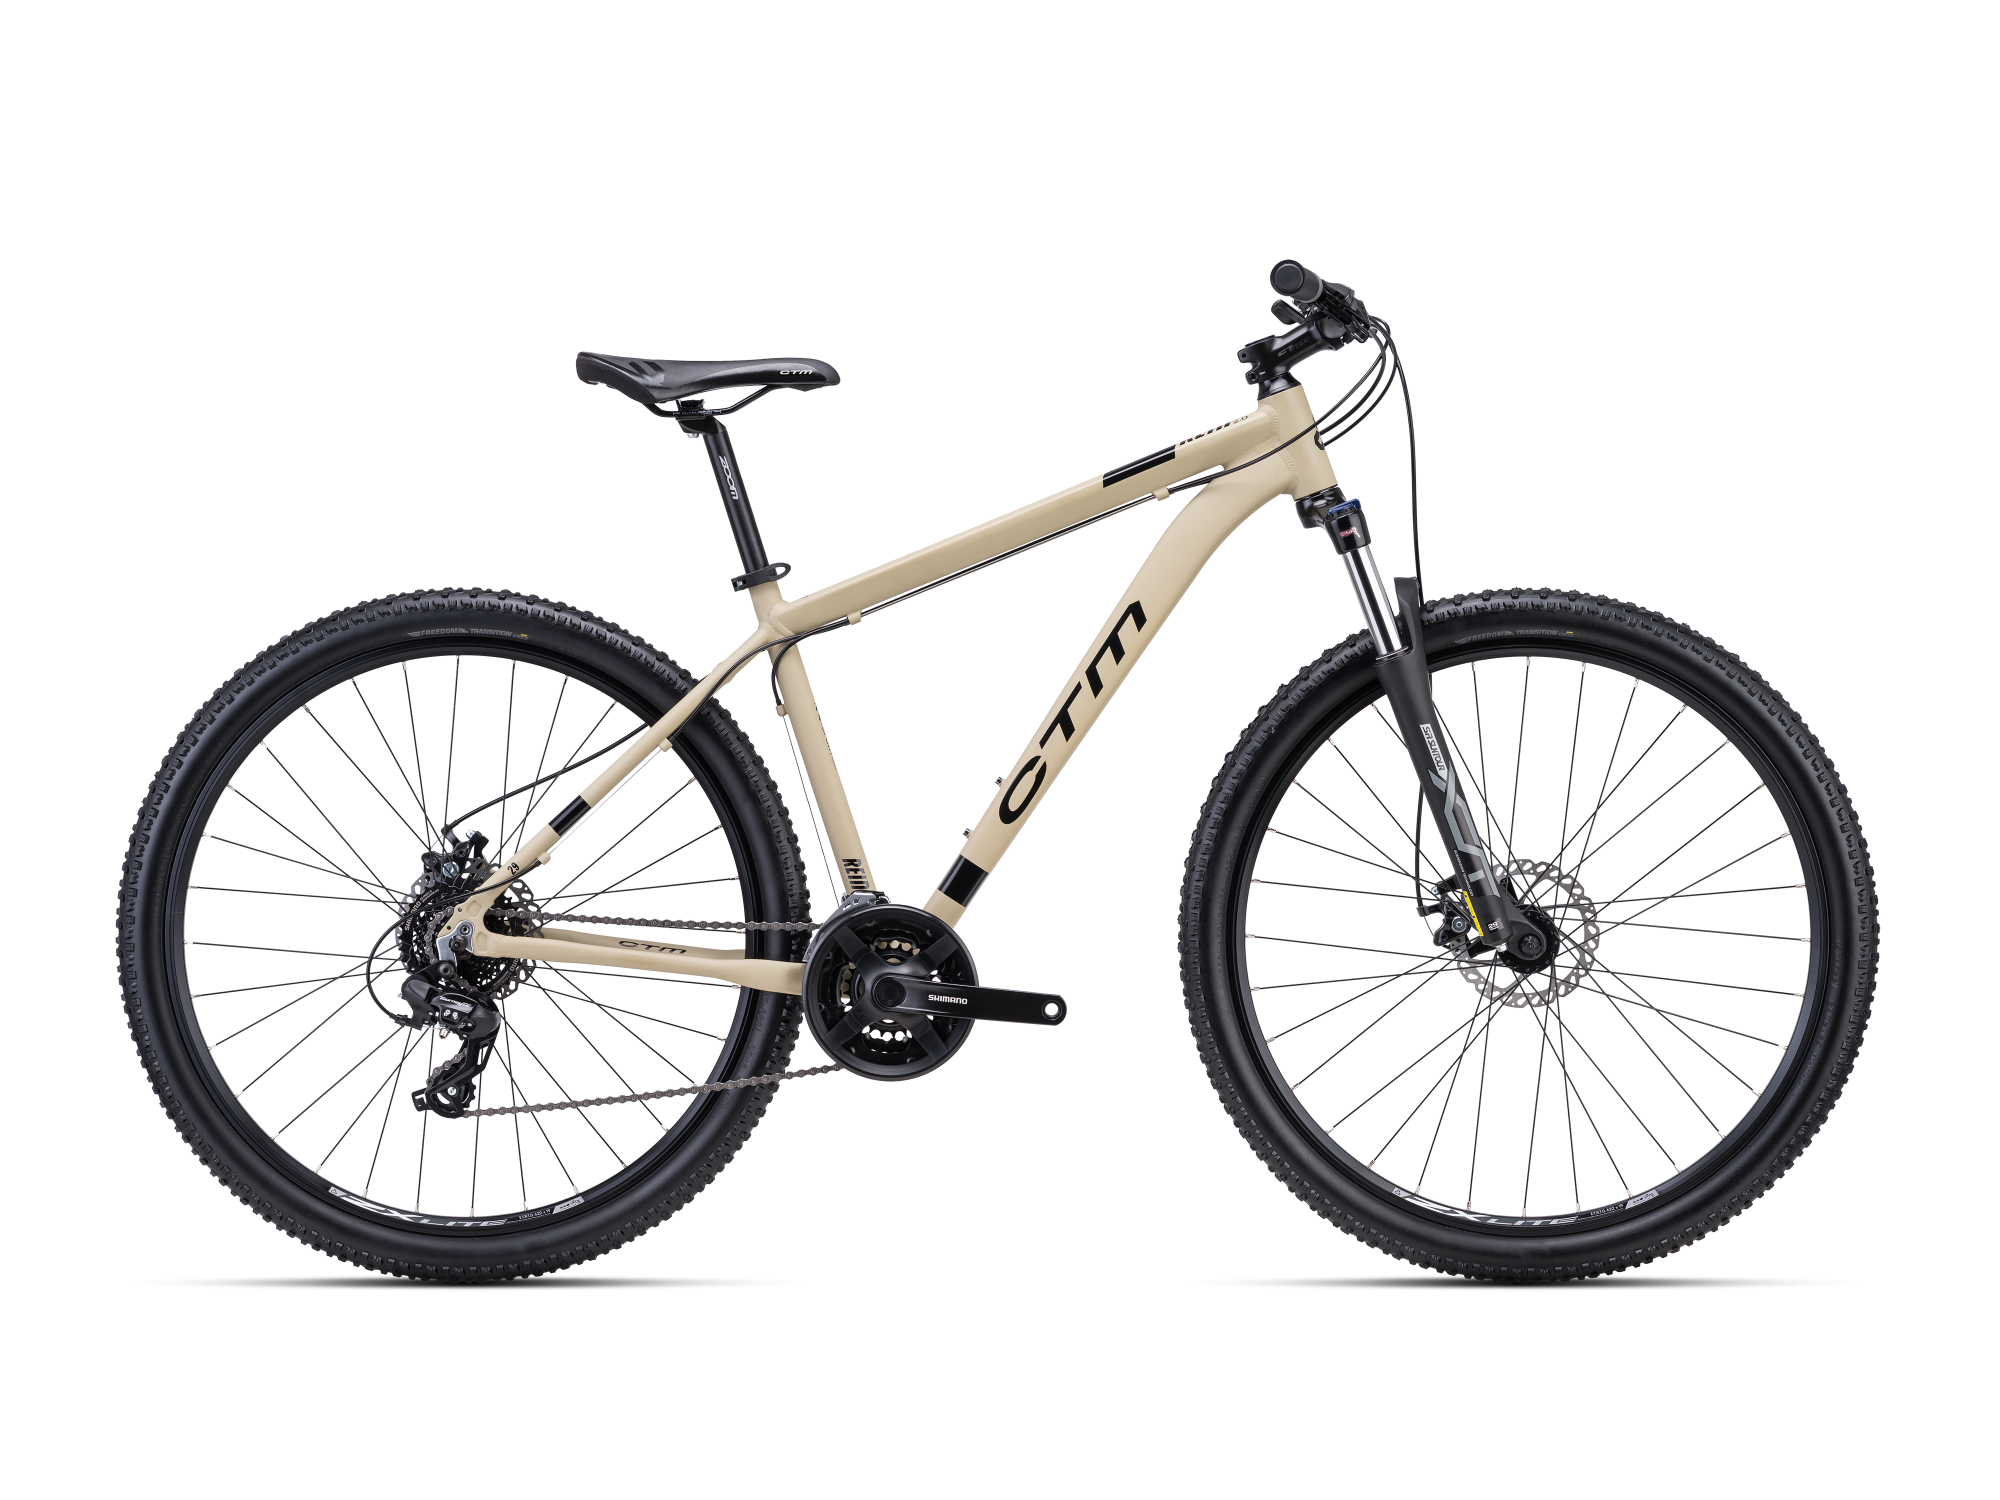 CTM Rein 2.0 brdski bicikl smeđe boje sa 29'' kotačima namijenjen za vožnju u prirodi i po šumskom terenu